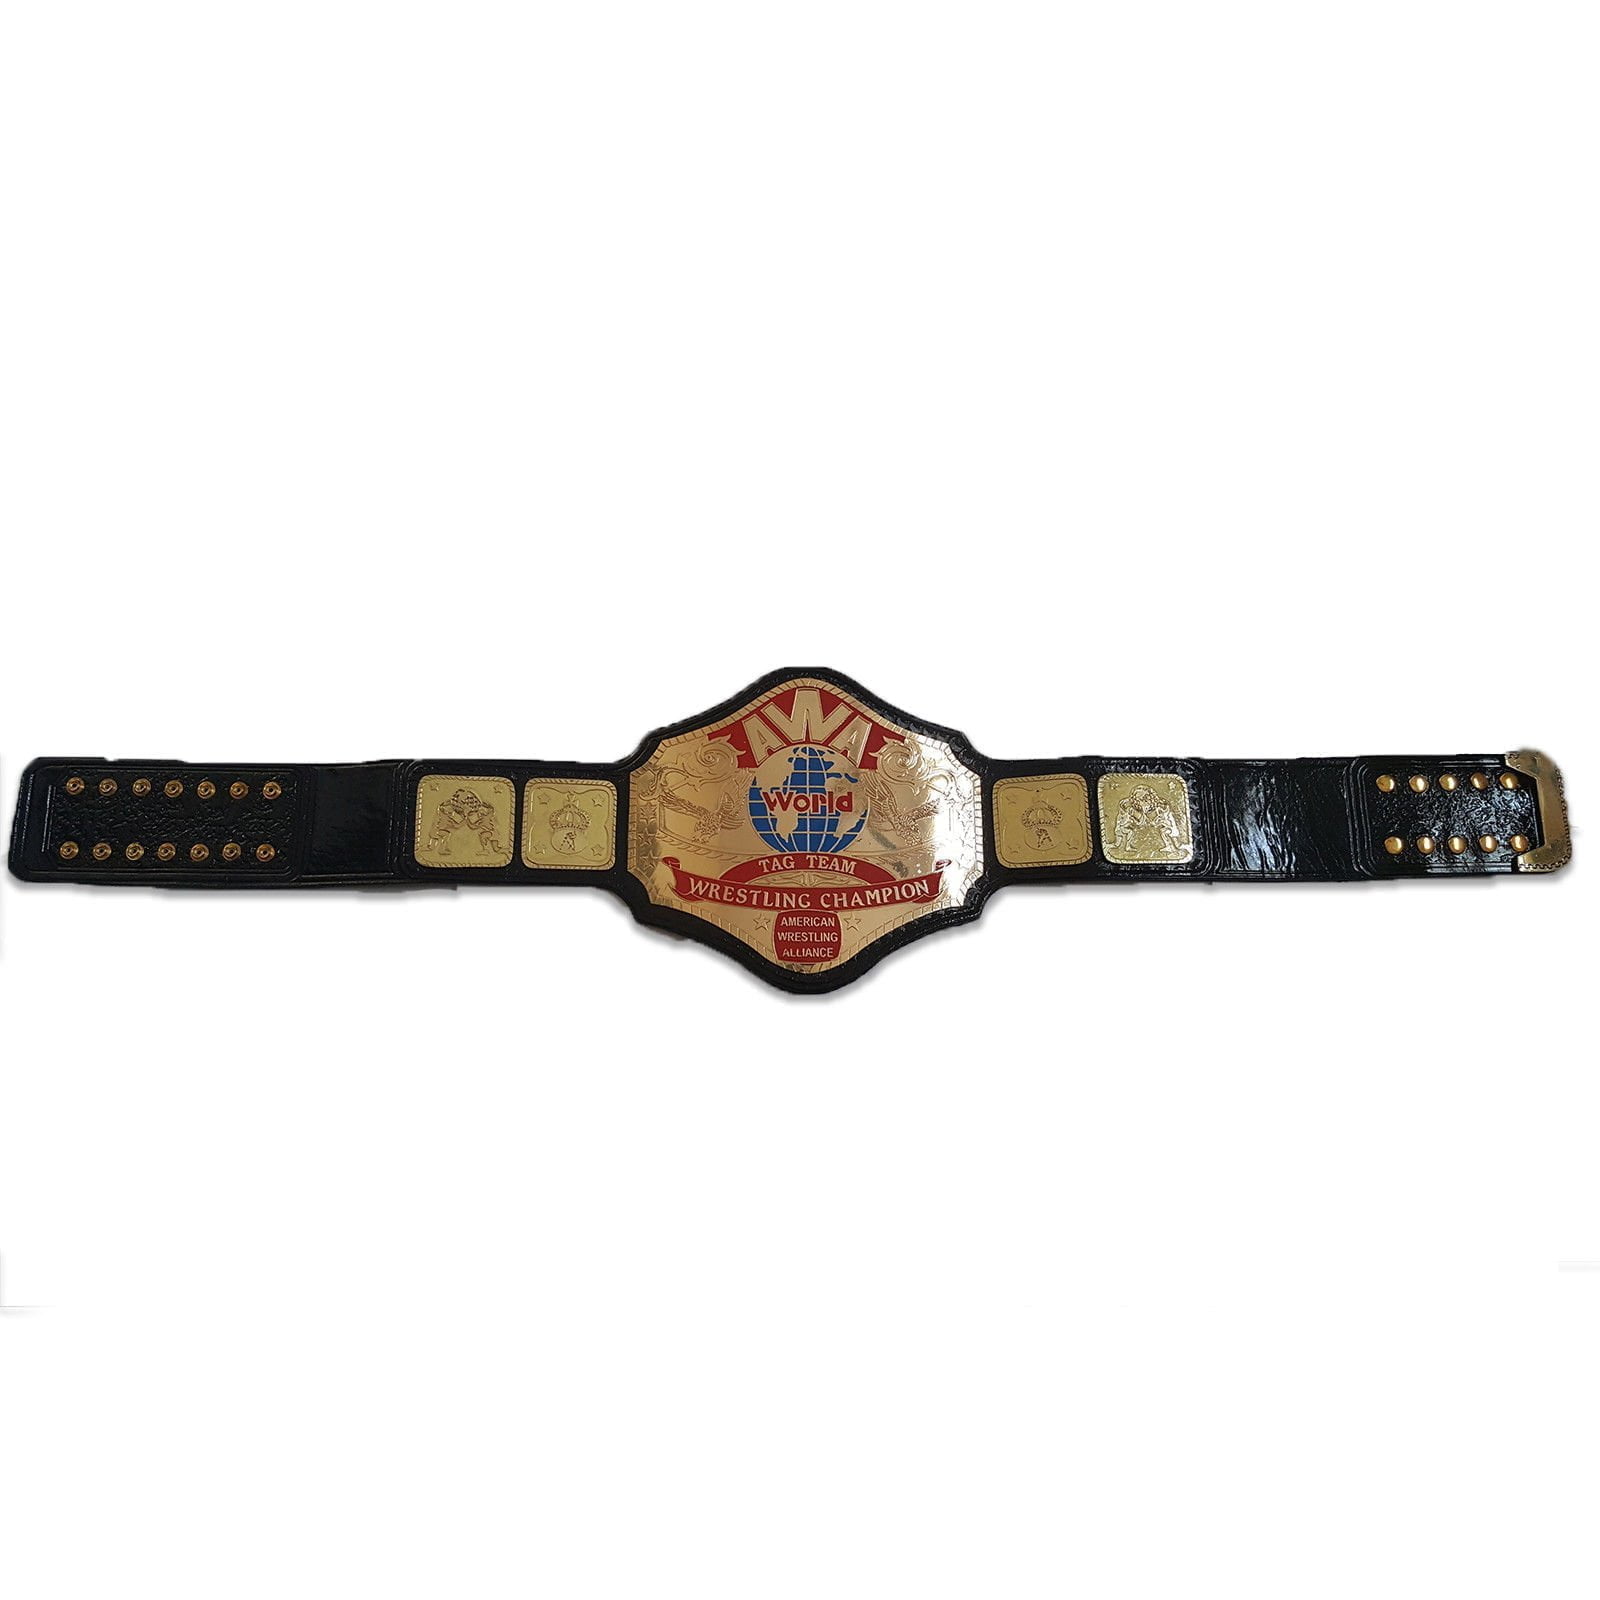 AWA World Heavyweight Wrestling Championship Belt